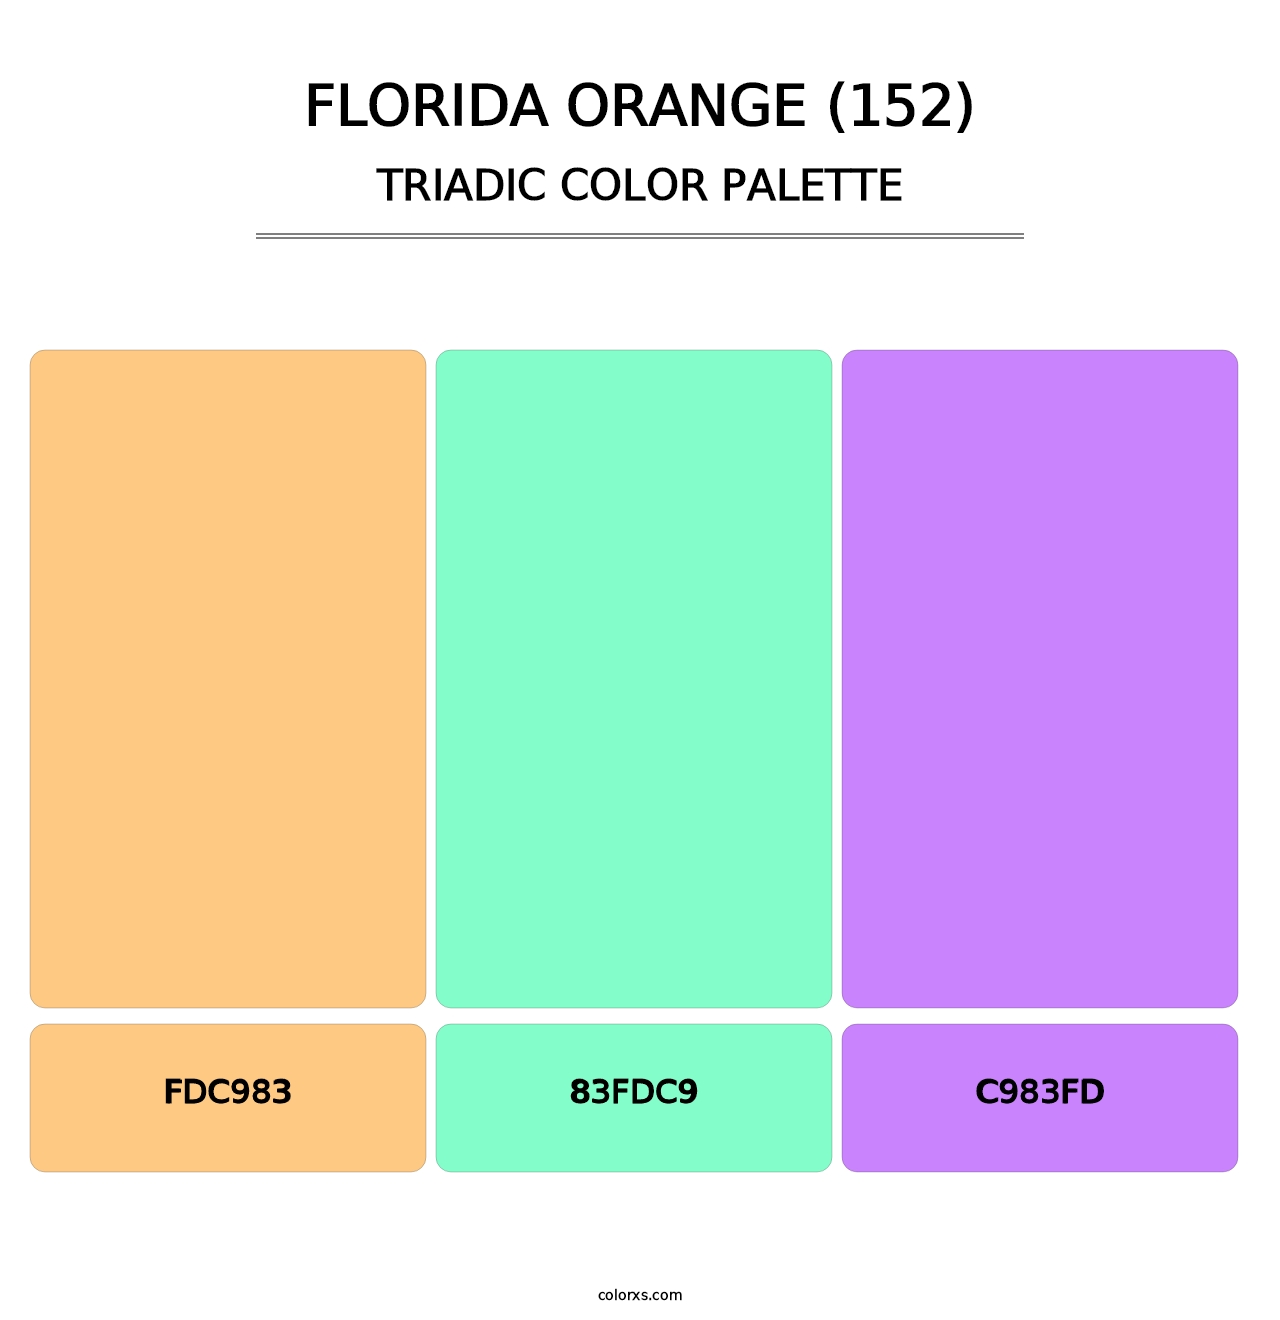 Florida Orange (152) - Triadic Color Palette